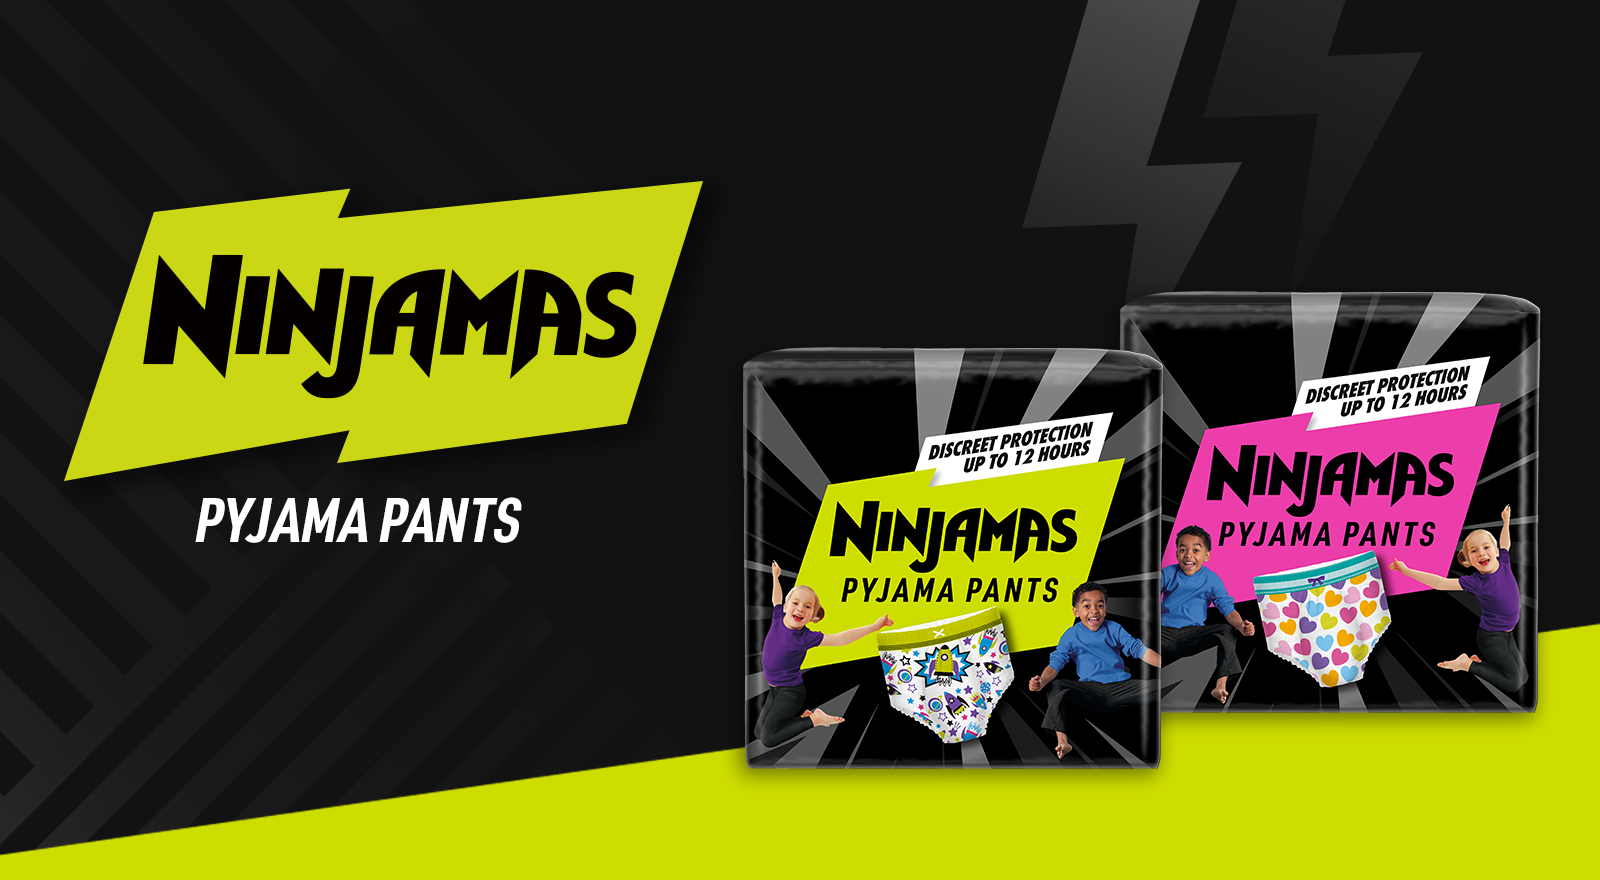 Pampers Ninjamas Pyjama Pants Girls Age 4-7 (17-30kg) 10Pack